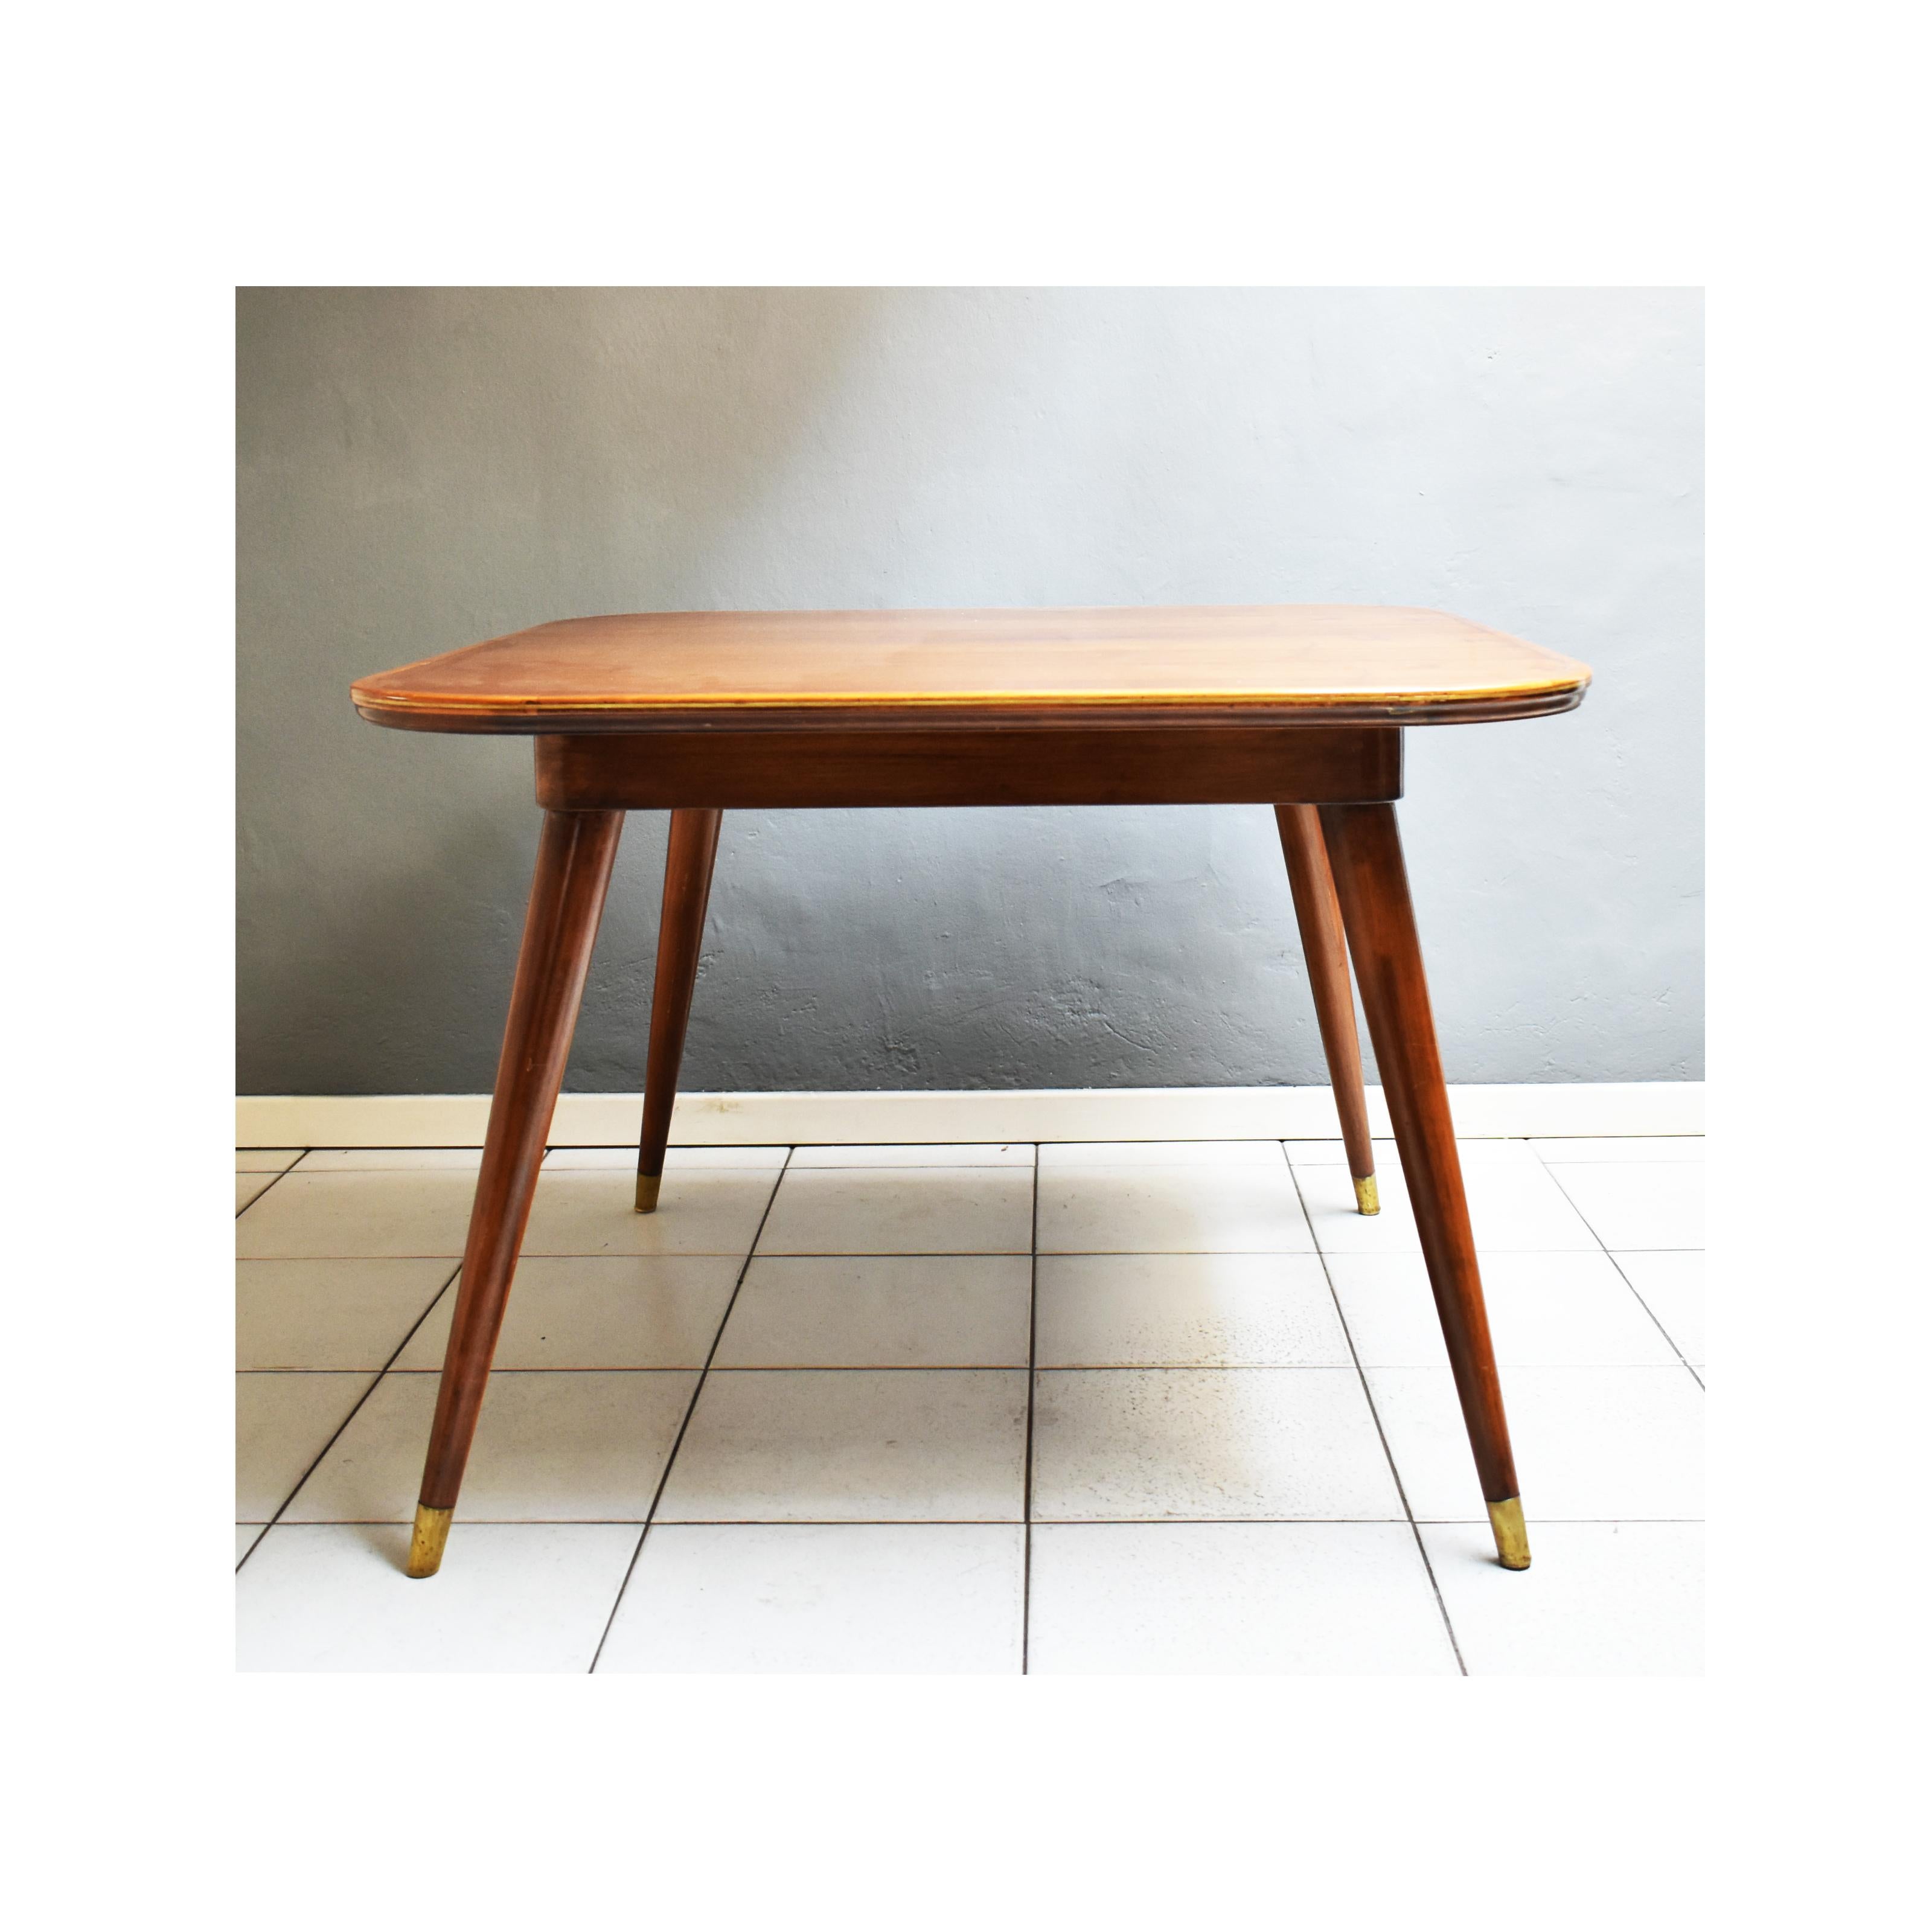 Table vintage des années 1950, fabrication italienne.
La table a une structure carrée avec des bords arrondis. 
Le long du contour de la surface d'appui, le bois présente une bordure en laiton qui est répétée sur le dessus et dans la partie finale